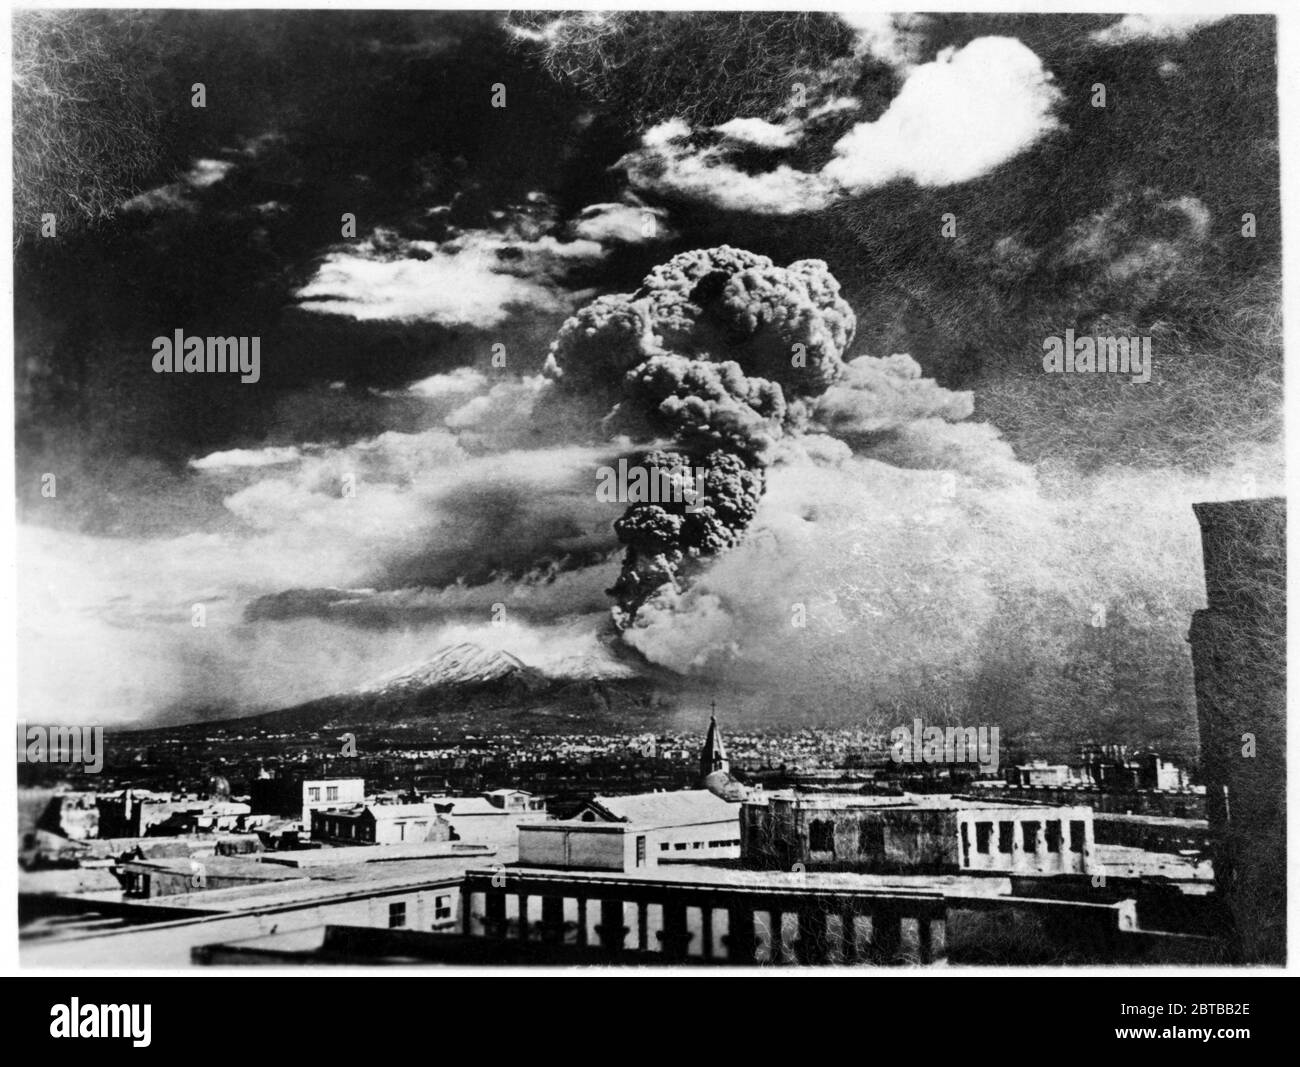 1944 , marzo, NAPOLI , ITALIA : l'eruzione DEL VESUVIO , dal 18 al 24 marzo, durante l'occupazione della forza alleata statunitense . Foto di OWI staff photographer , approvato da appropriata autiorità militare degli Stati Uniti . - MONTE VESUVIO - NAPOLI - ITALIA - ERUZIONE VULCANICA - VULCANO - VULCANO - SECONDA GUERRA MONDIALE - SECONDA GUERRA MONDIALE --- ARCHIVIO GBB Foto Stock